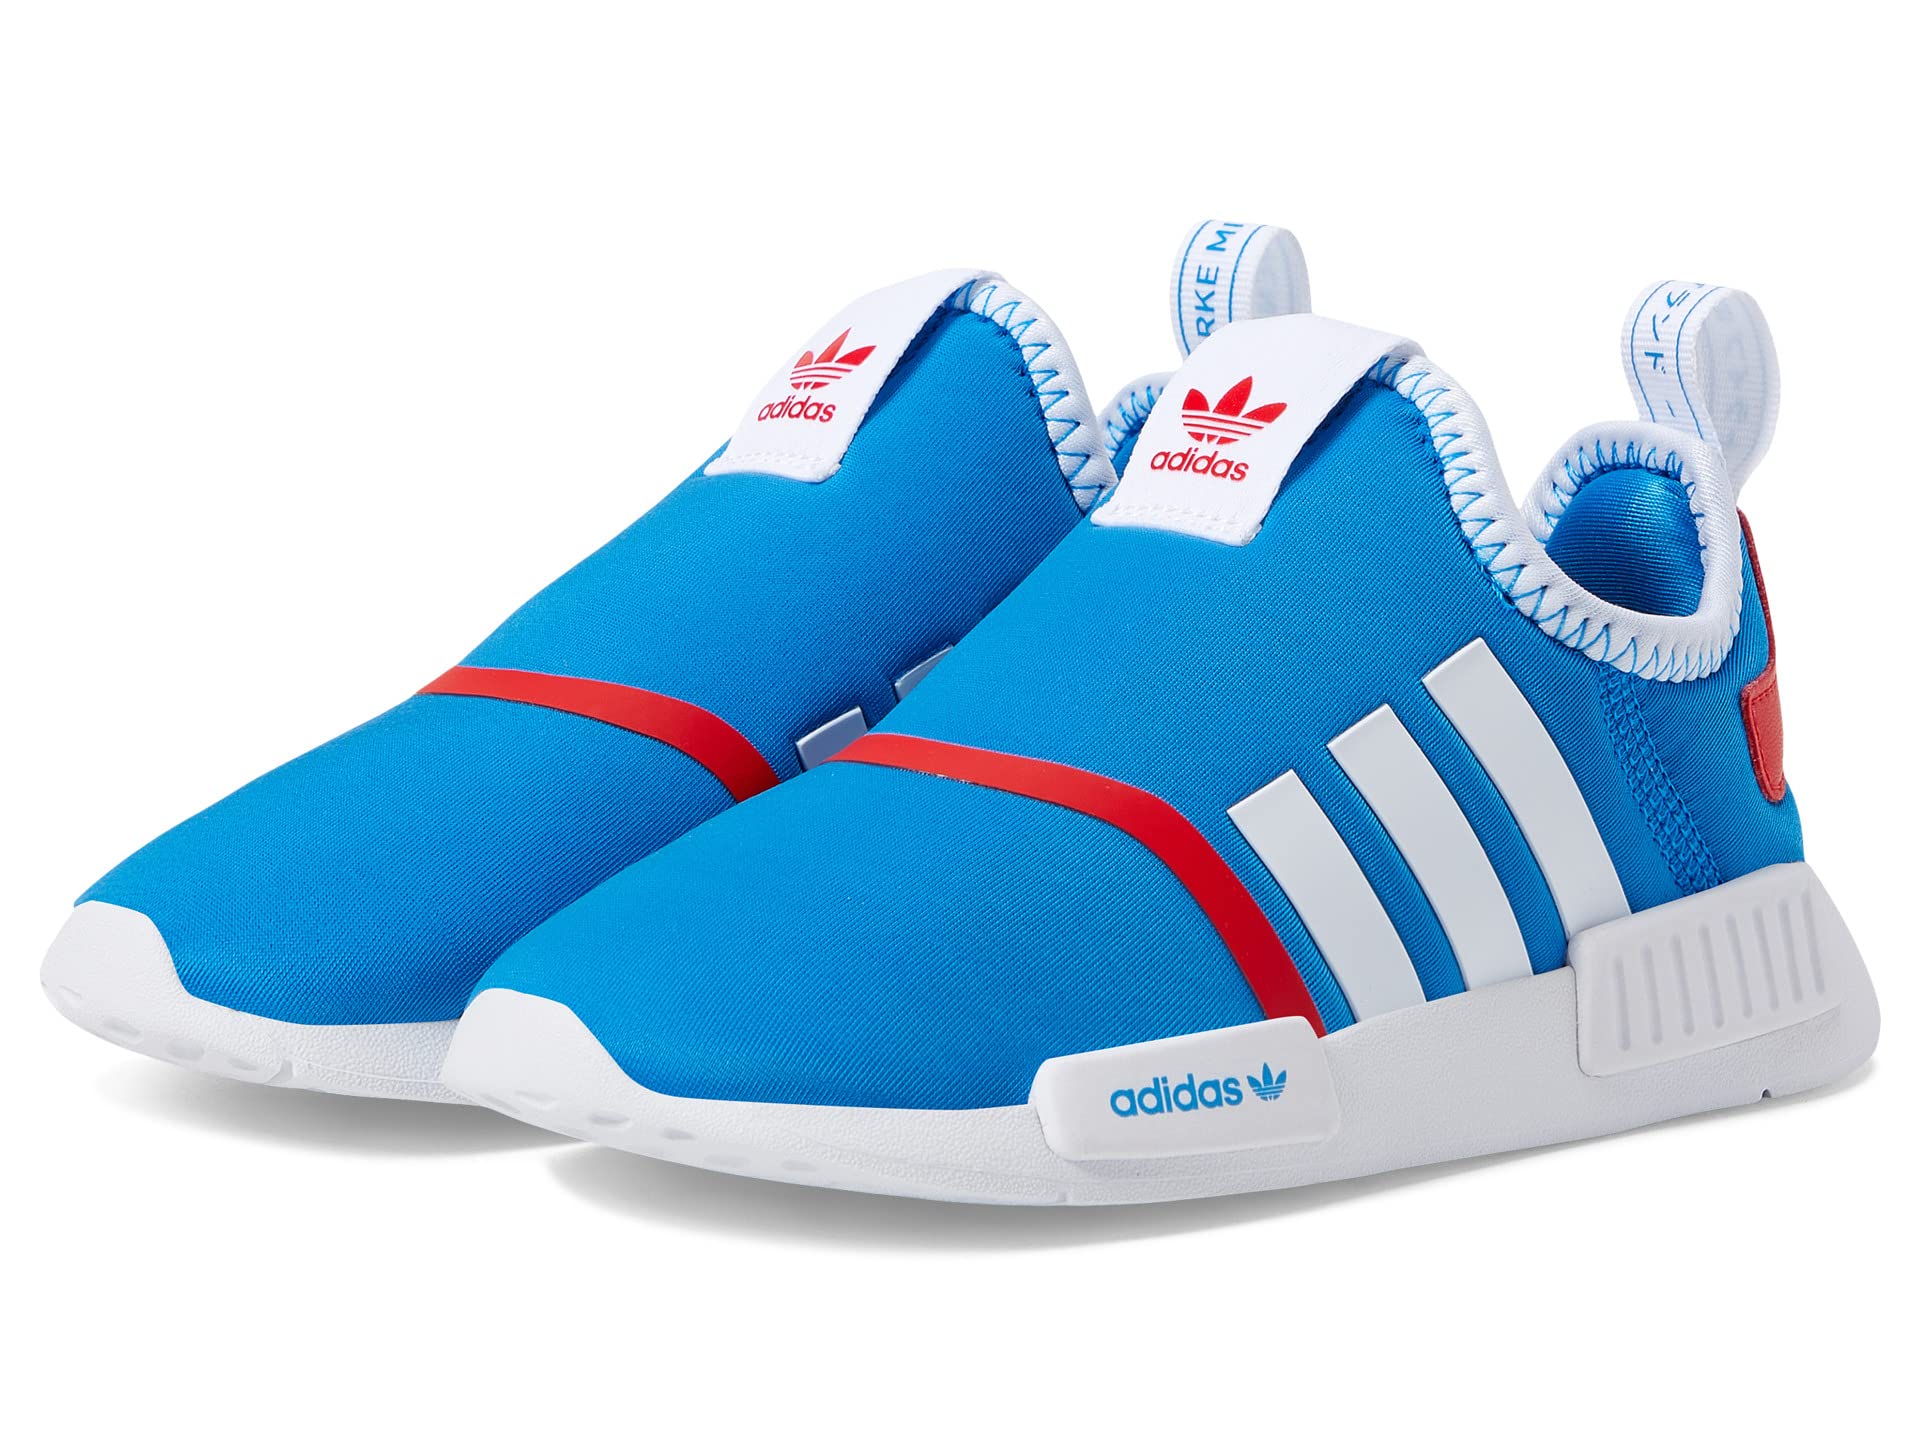 Детские кроссовки Adidas Originals NMD 360, голубой/красный олимпийка he9307 adidas b3sfzhd vivid red 128